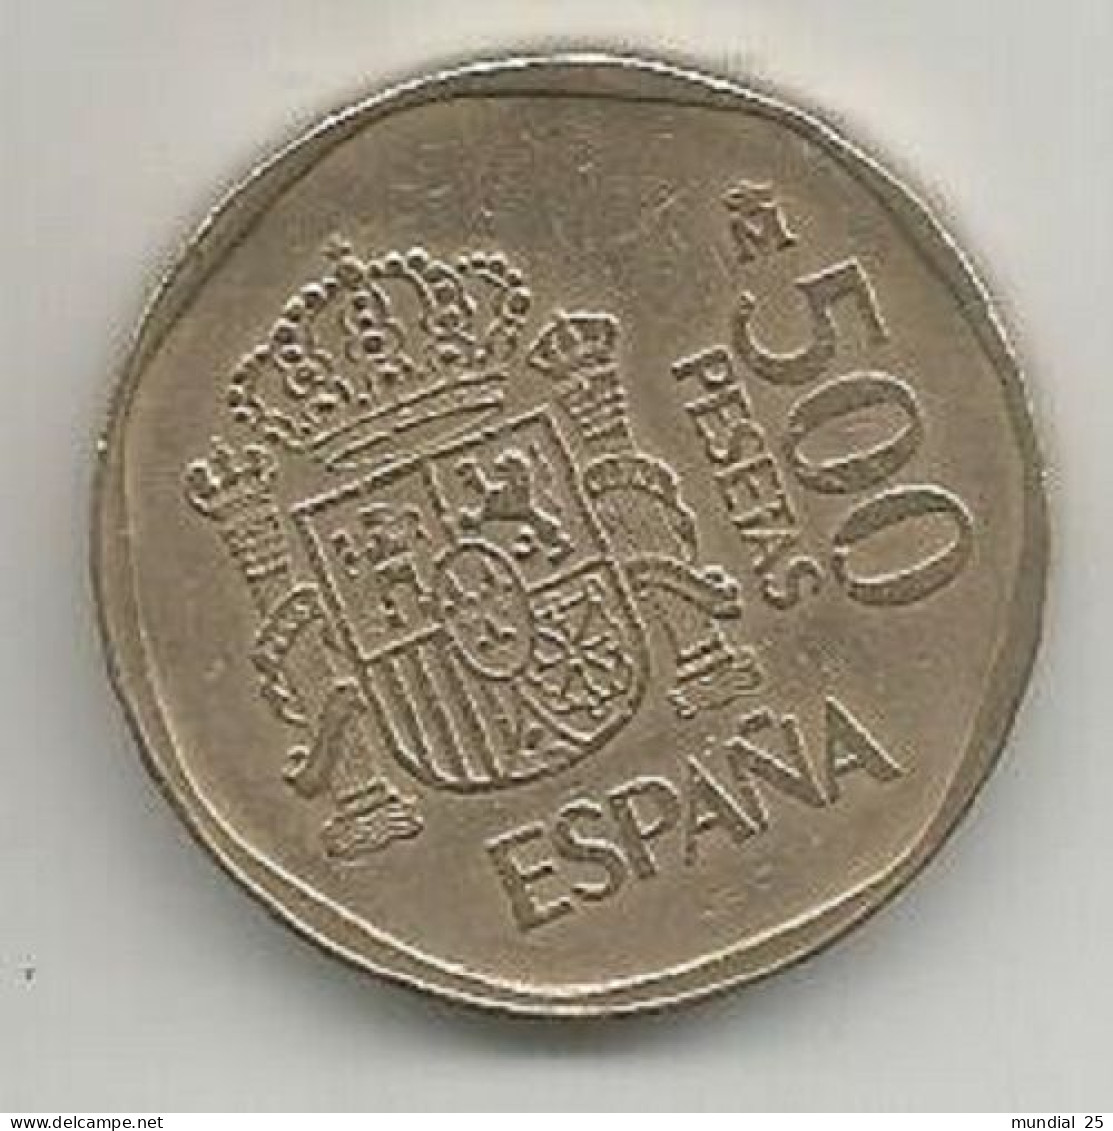 SPAIN 500 PESETAS 1988 - 500 Pesetas